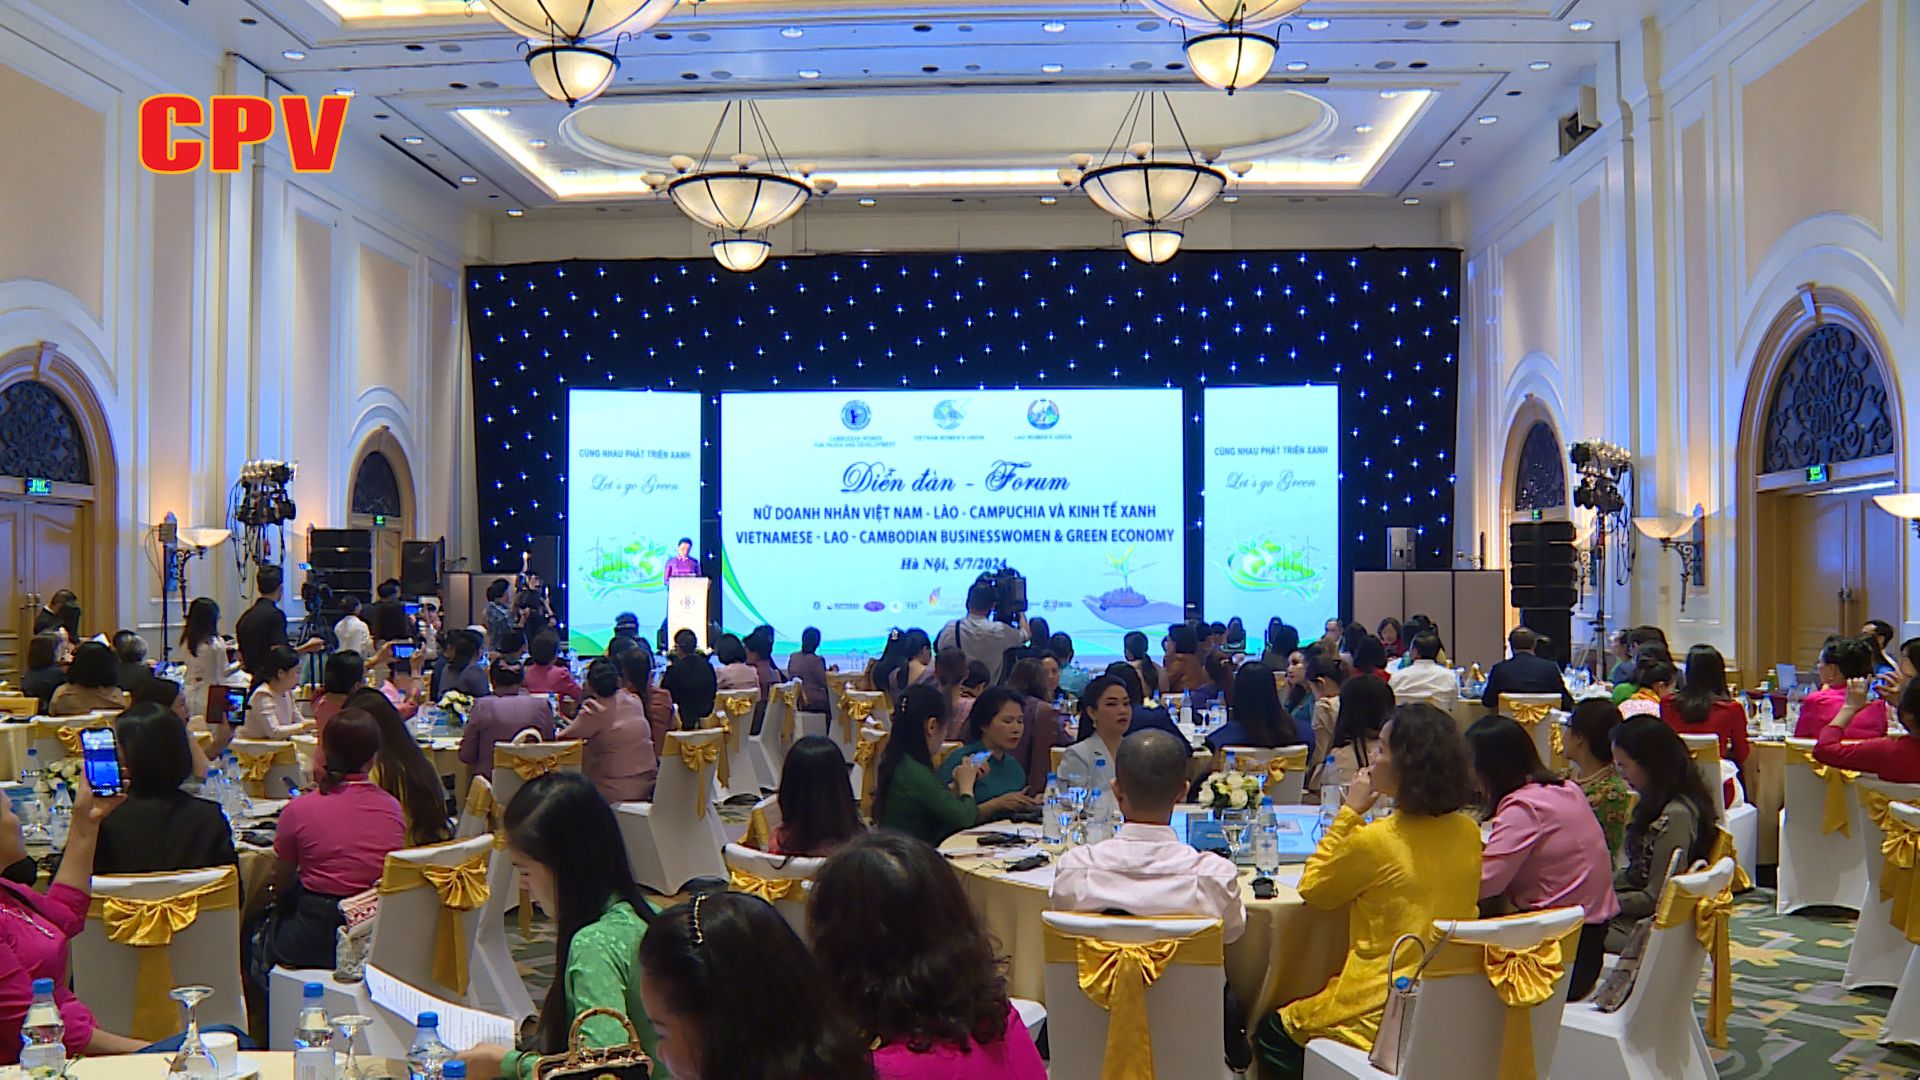 Nữ doanh nhân 3 nước Việt Nam - Lào - Campuchia kết nối thúc đẩy phát triển kinh tế xanh